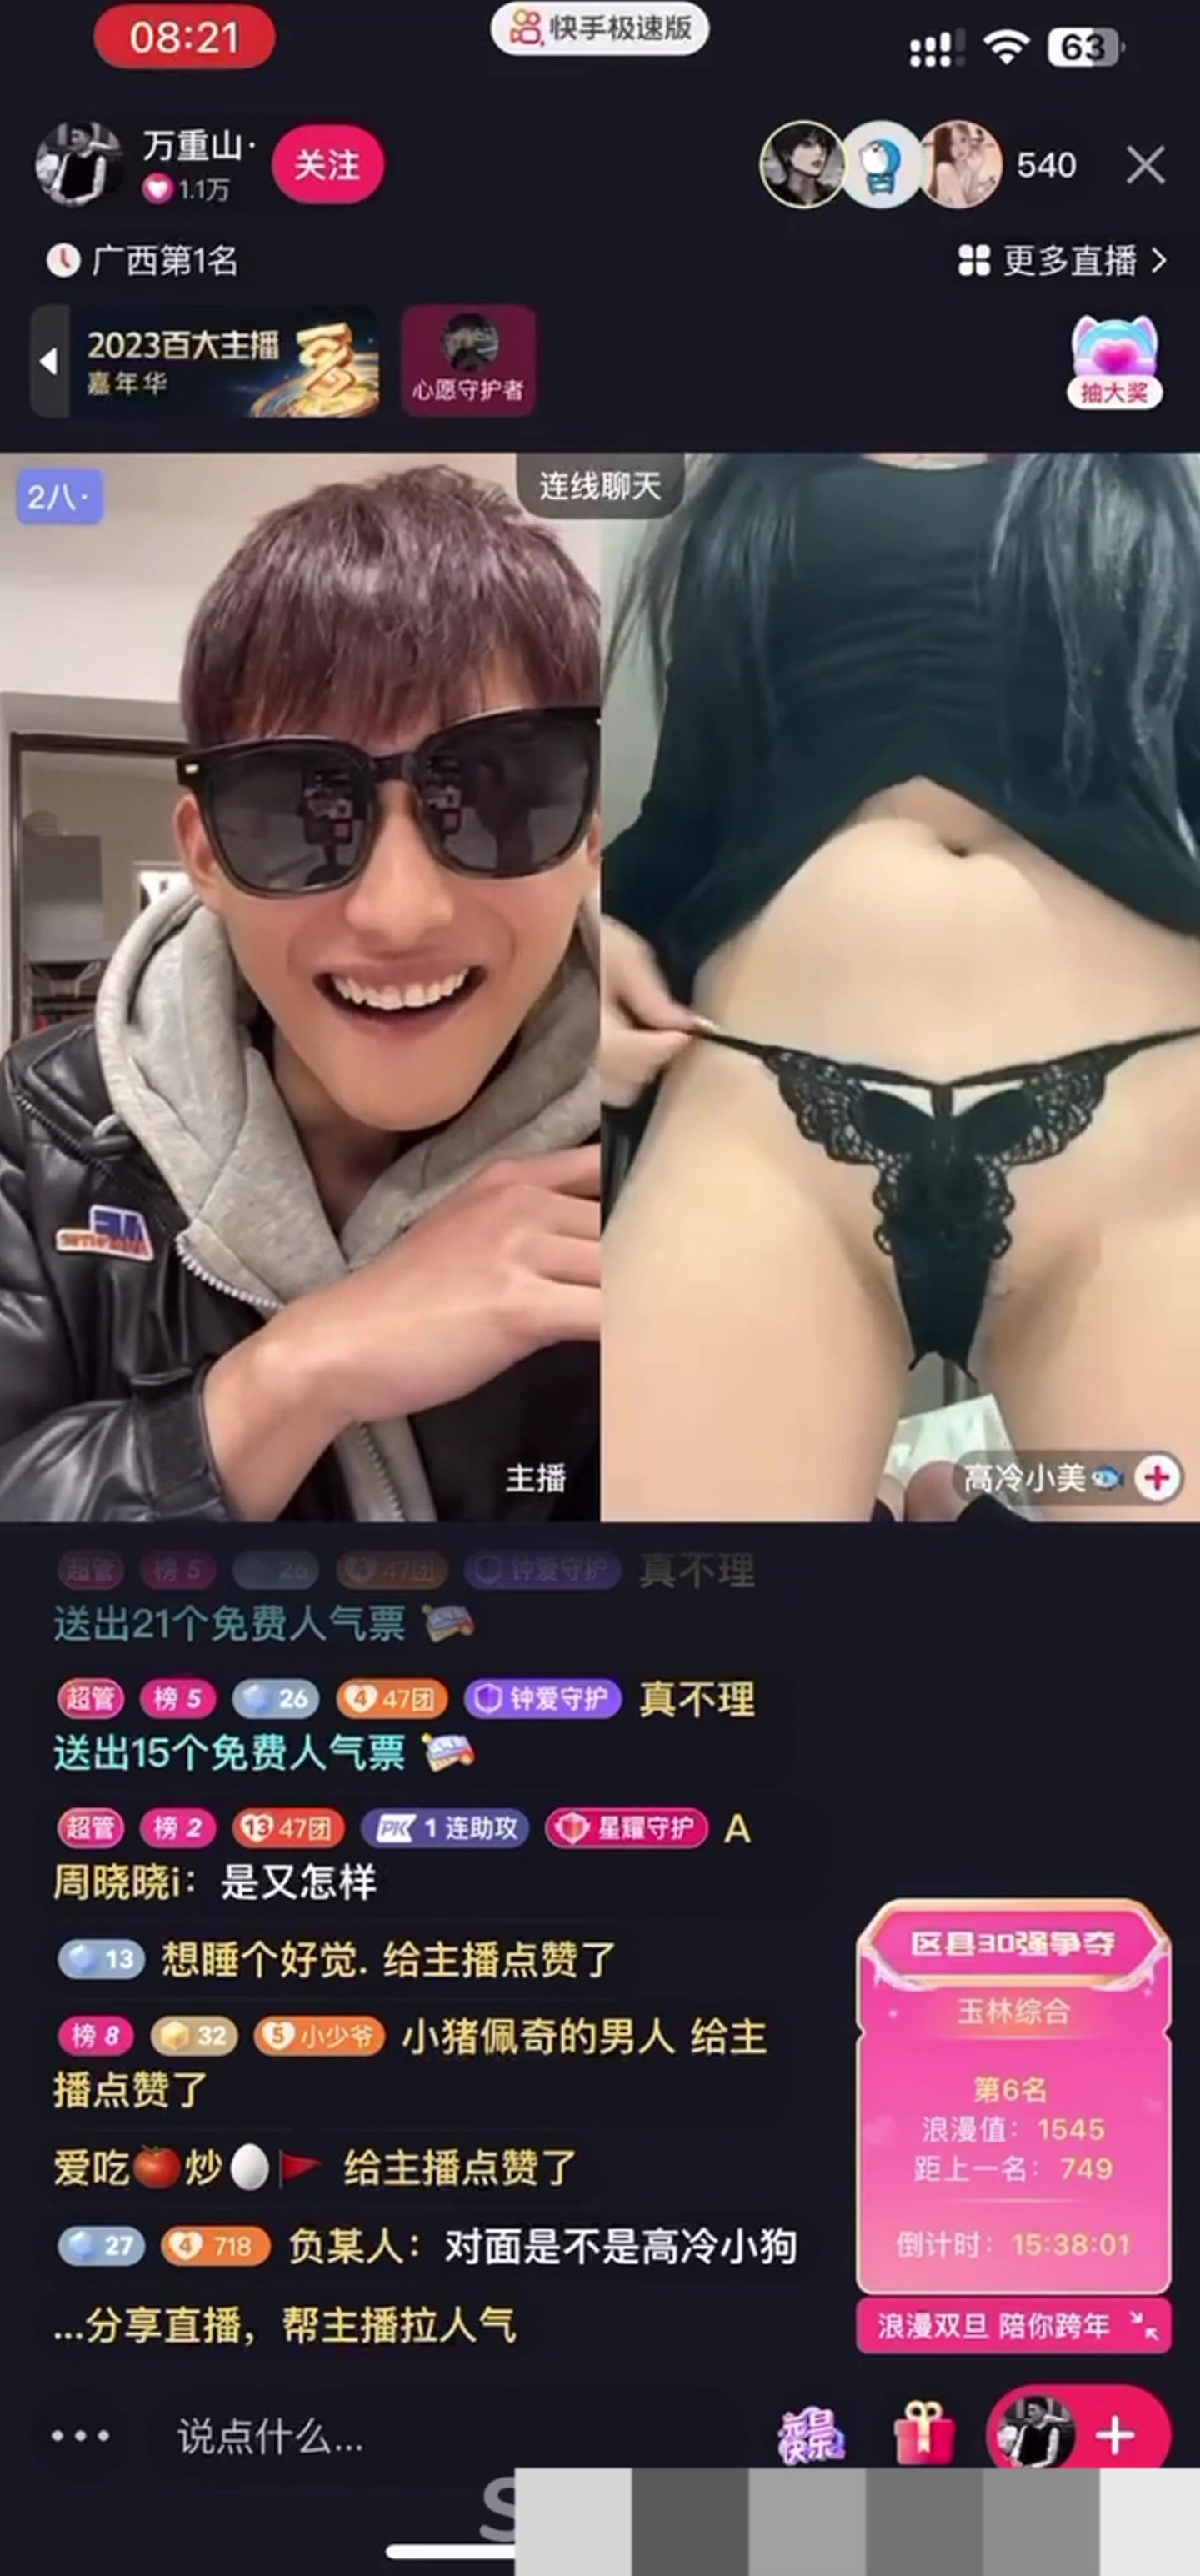 [Douyin rất lớn! 】Wan Zhongshan Lianmai là một tiểu mỹ nhân lạnh lùng, anh trai hôi hám đến đây ~ Nếu dám nhìn ta thì cởi quần áo ra! Mặc quần lót sexy để mang lại lợi ích cho anh em trong phòng phát sóng trực tiếp!